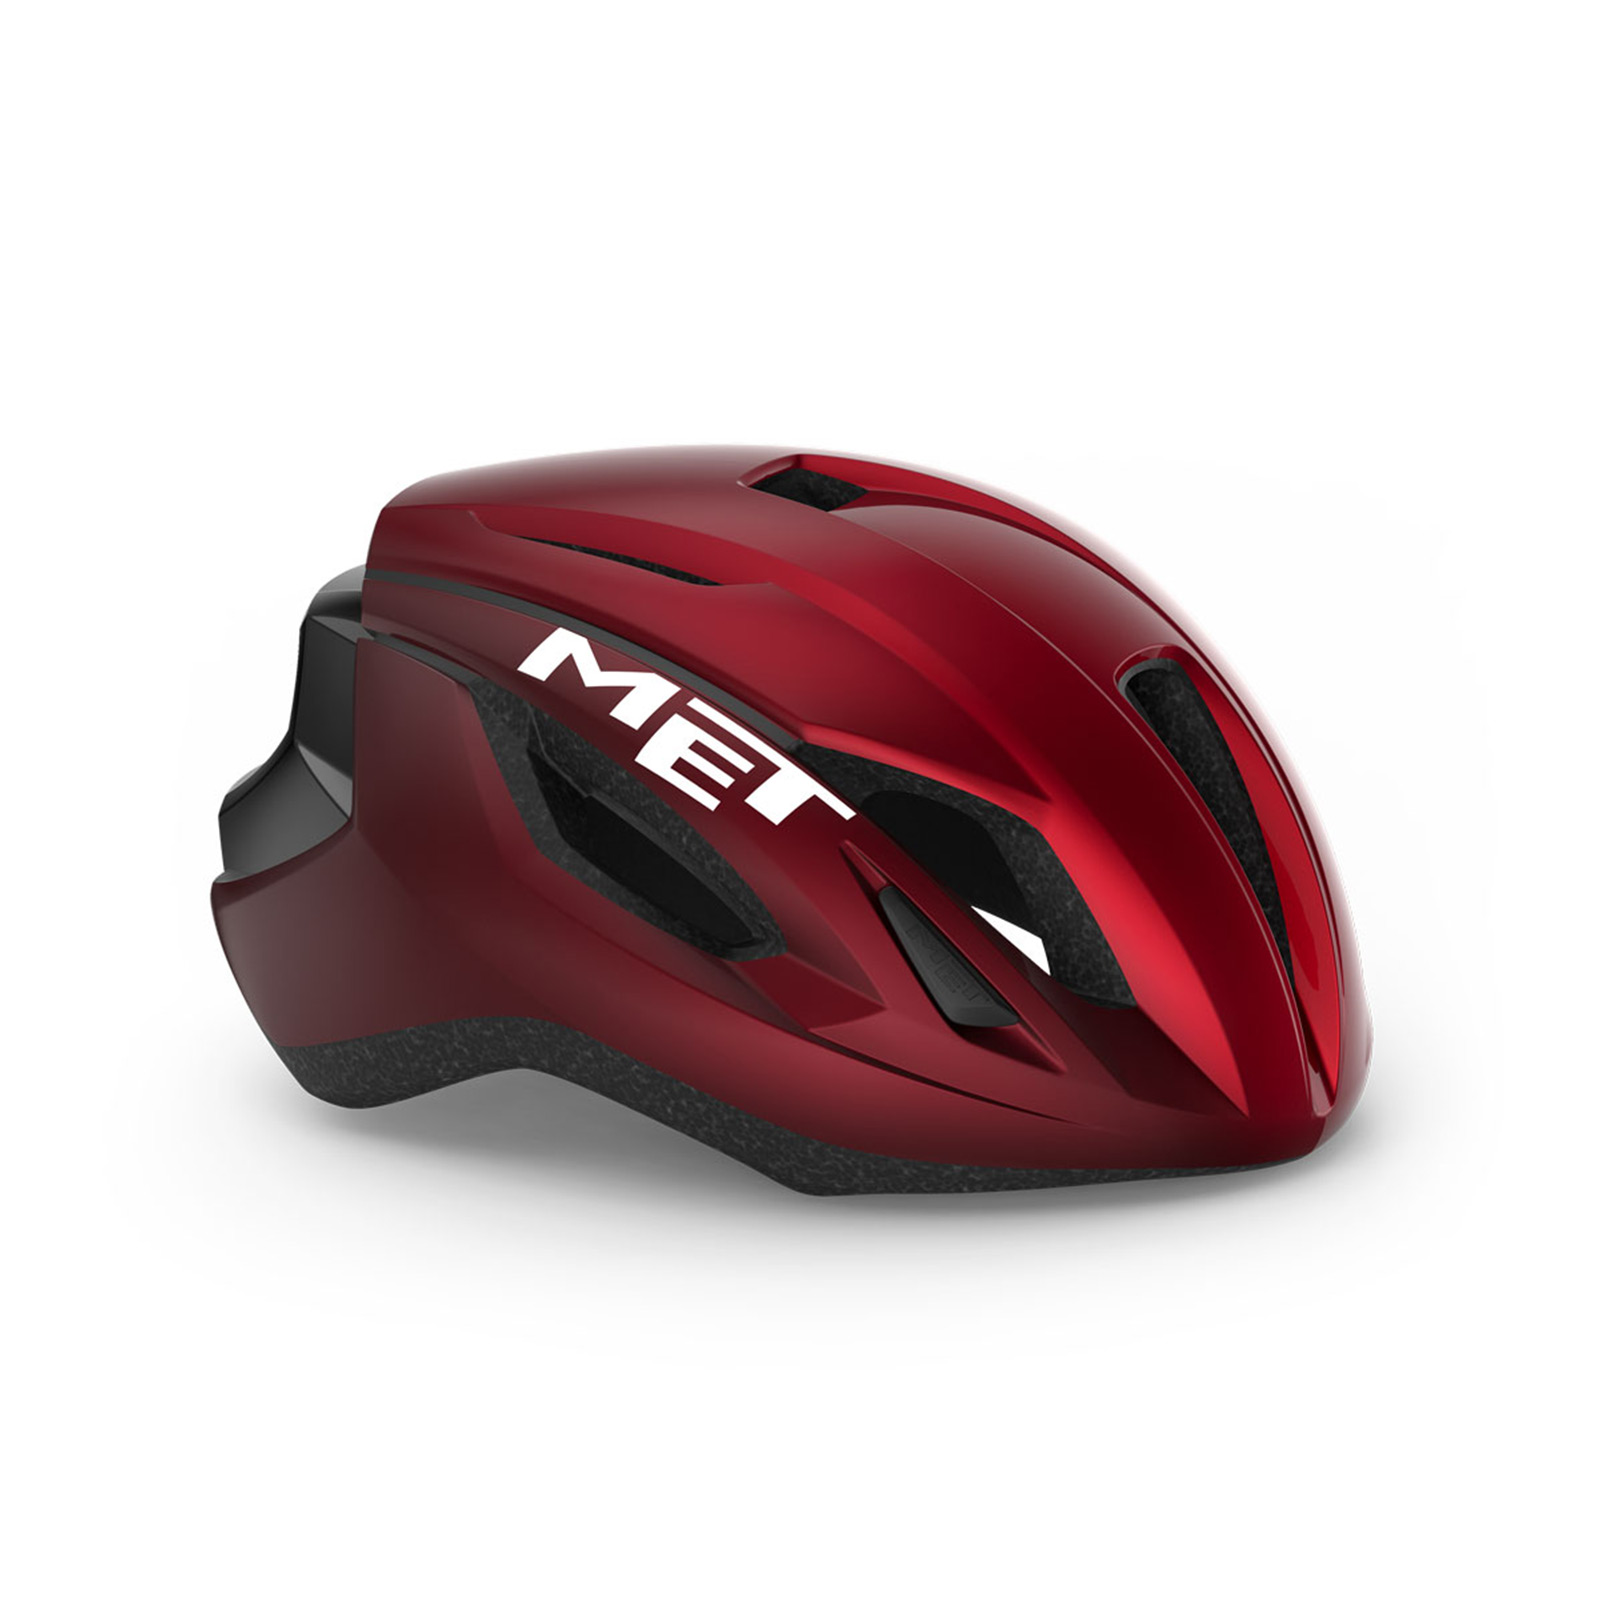 met-strale-road-cycling-helmet-M107RO2